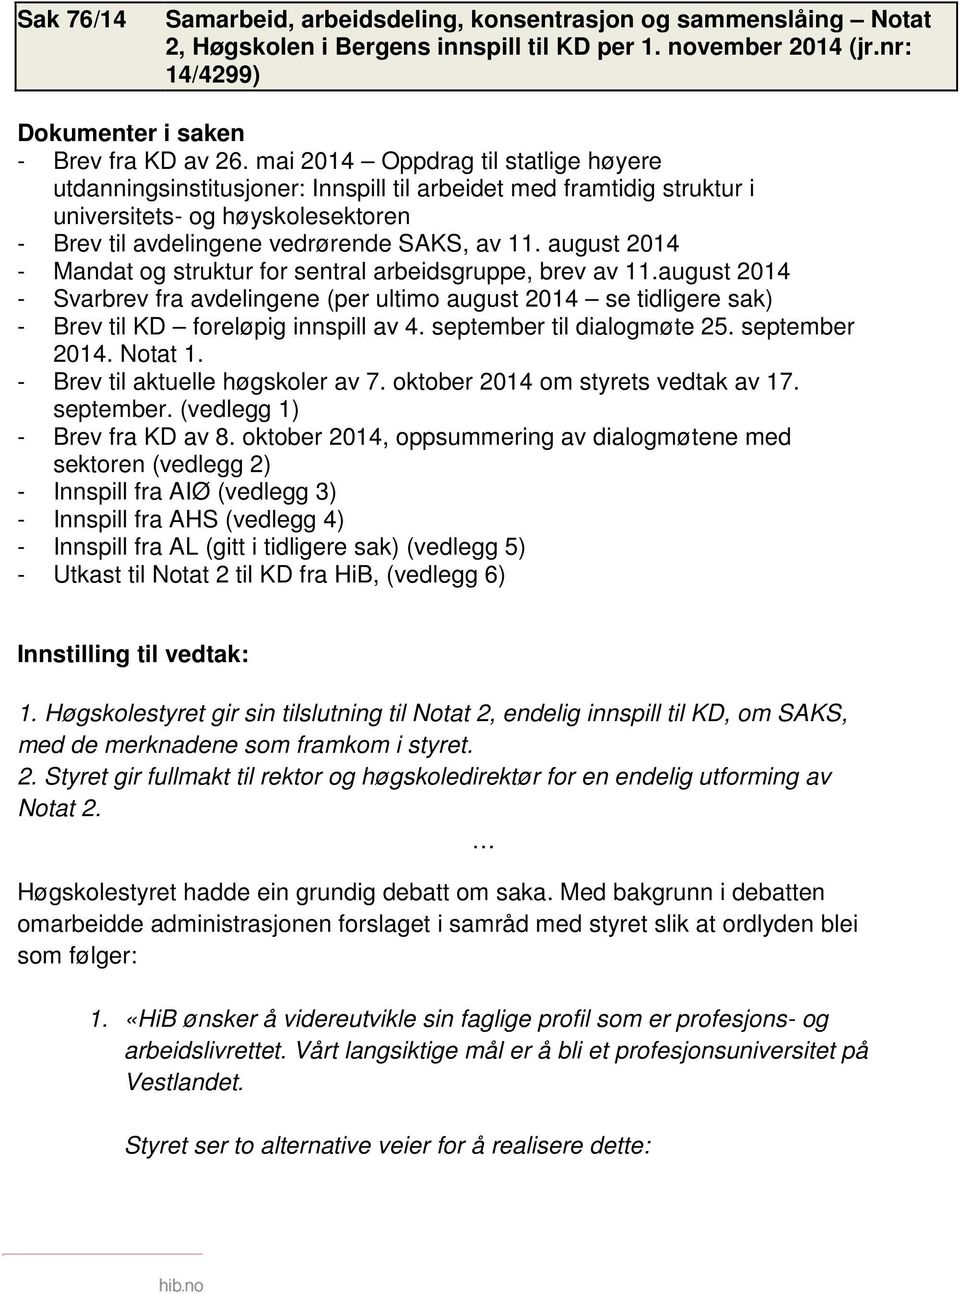 august 2014 - Mandat og struktur for sentral arbeidsgruppe, brev av 11.august 2014 - Svarbrev fra avdelingene (per ultimo august 2014 se tidligere sak) - Brev til KD foreløpig innspill av 4.